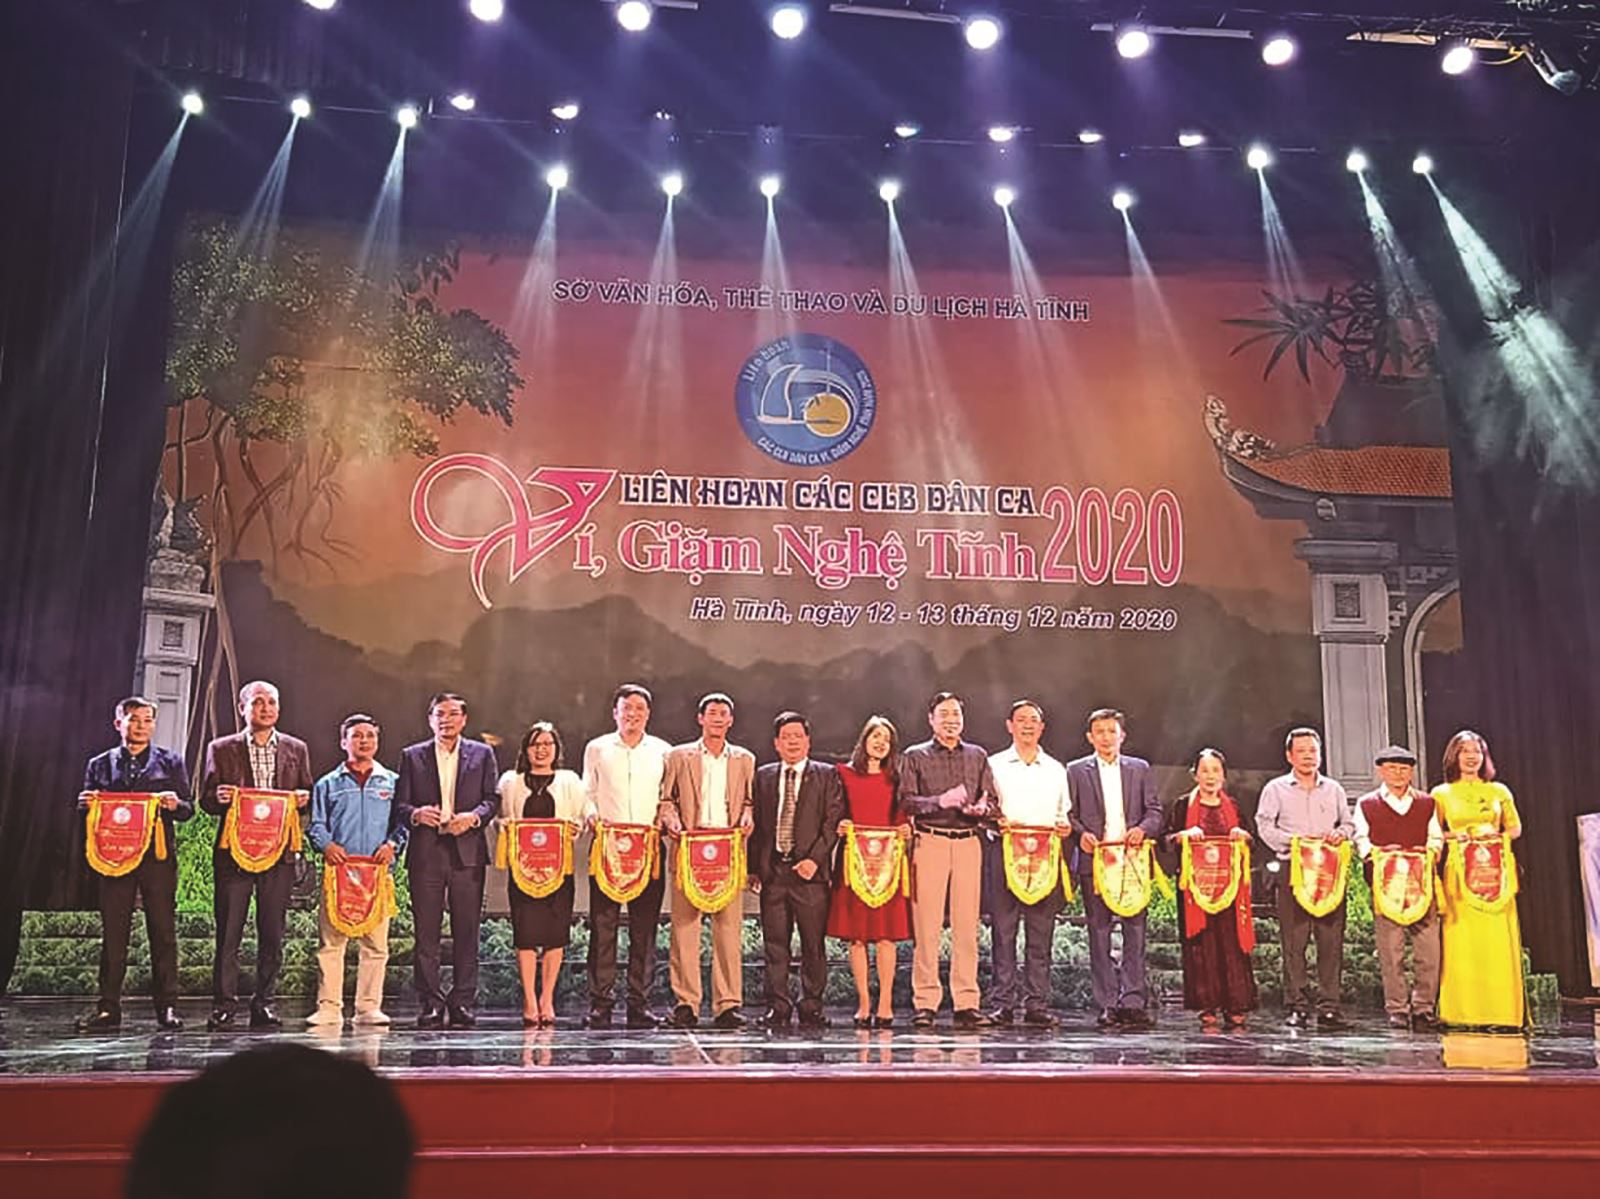 Hà Tĩnh: Tổ chức thành công Liên hoan Dân ca Ví Giặm Nghệ Tĩnh năm 2020